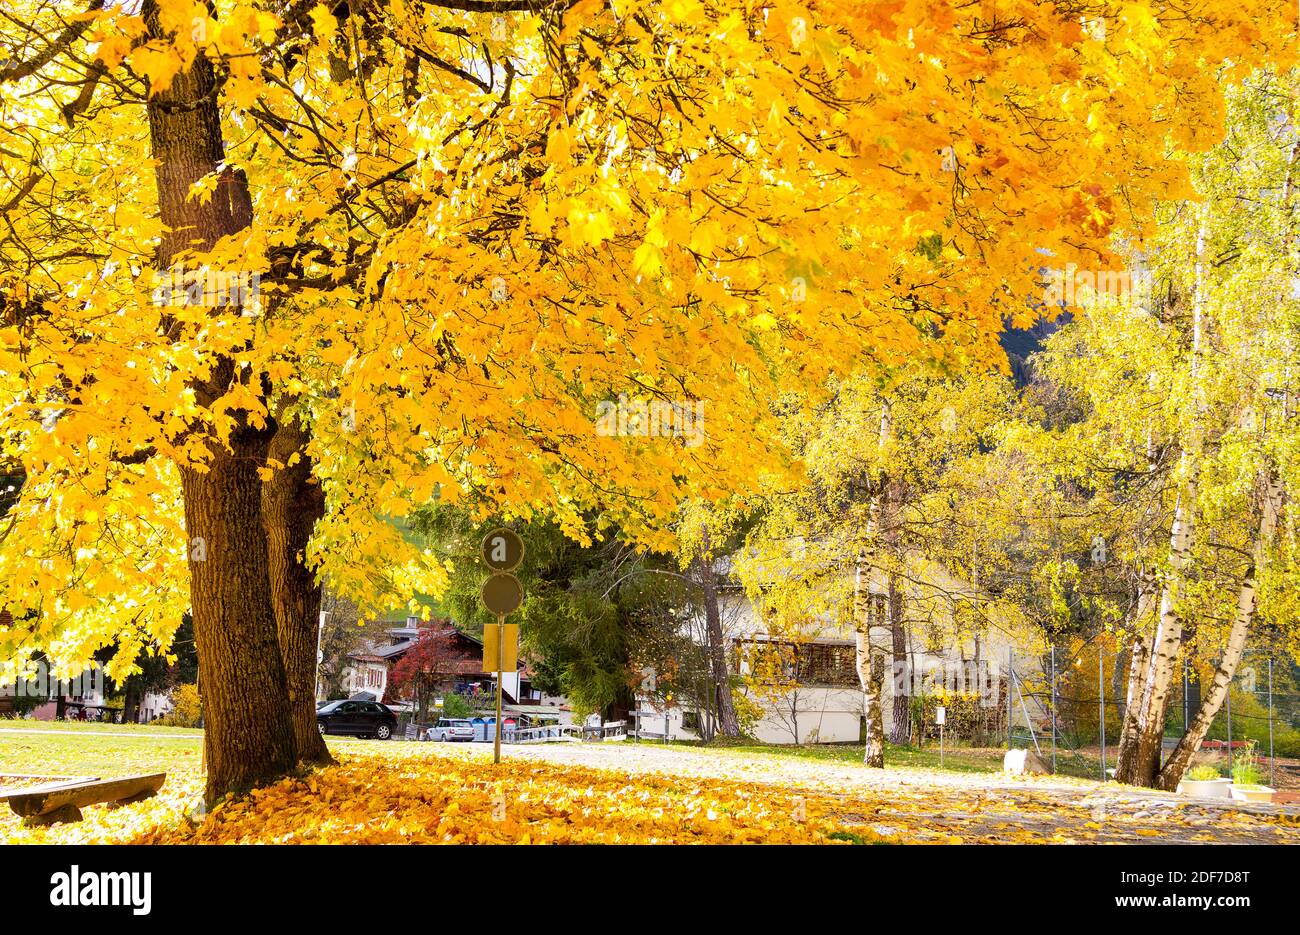 Große Bäume in der Herbstsaison mit gelben Blättern in der Hintergrundbeleuchtung am Straßenrand Stockfoto